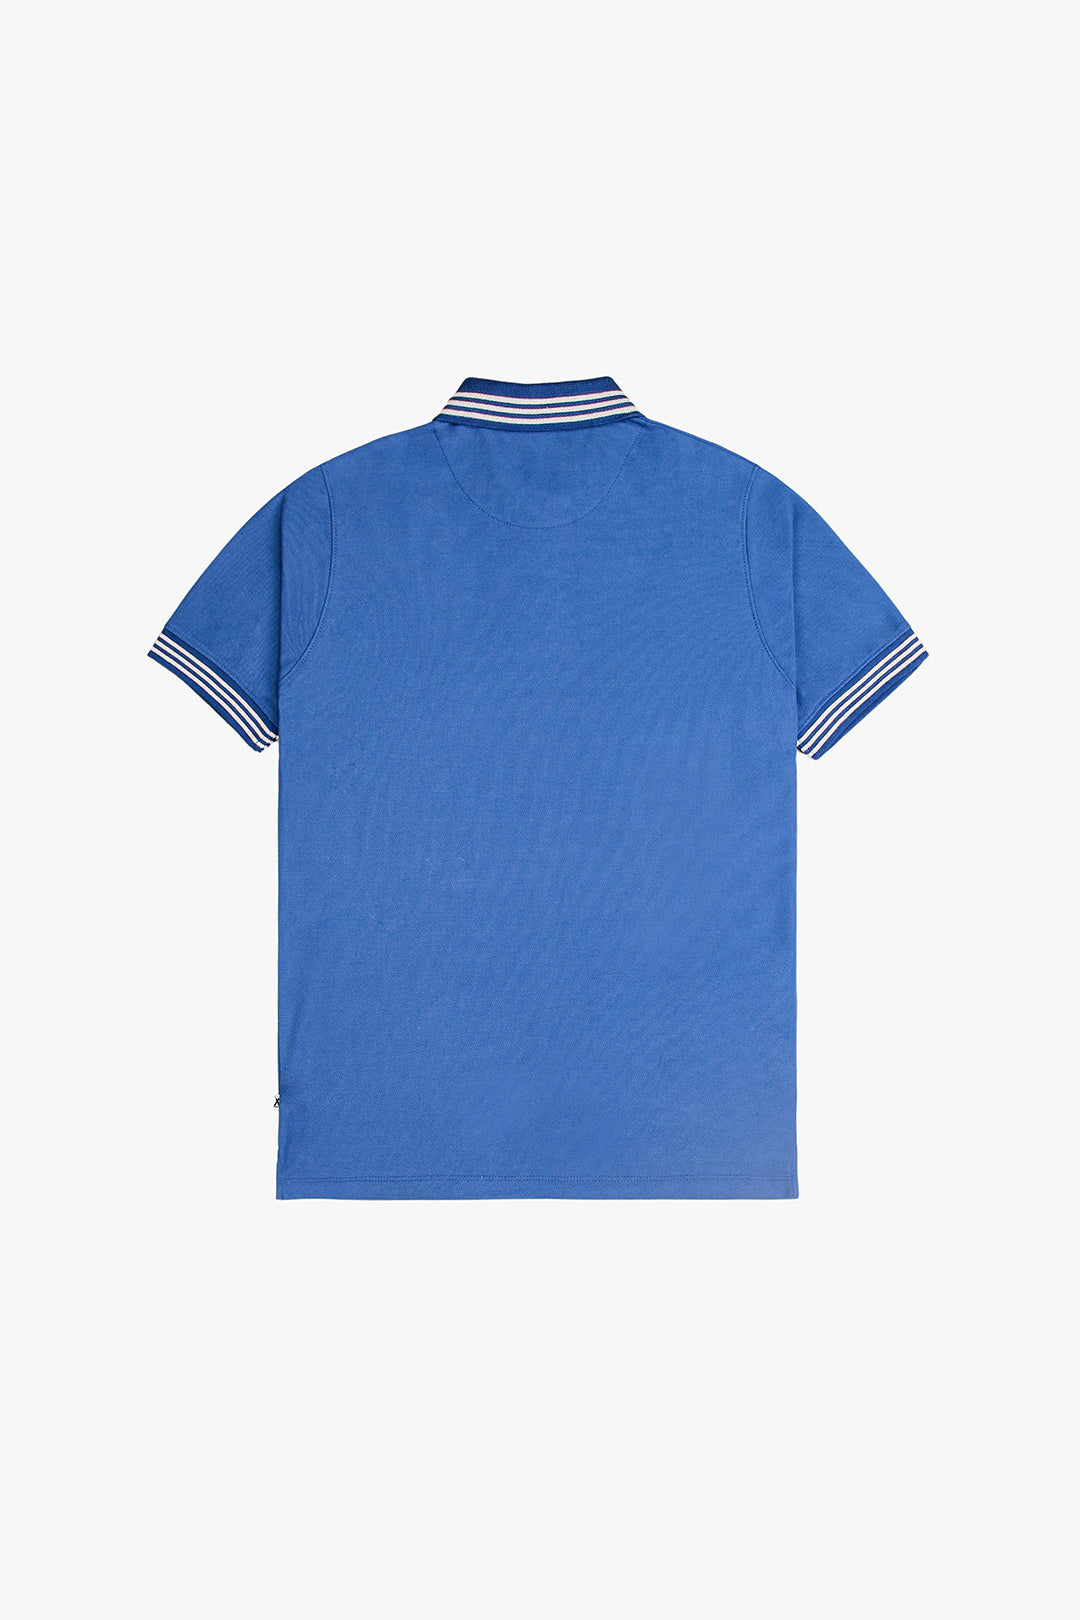 Oceanic Blue Premium Polo Shirt For Men's